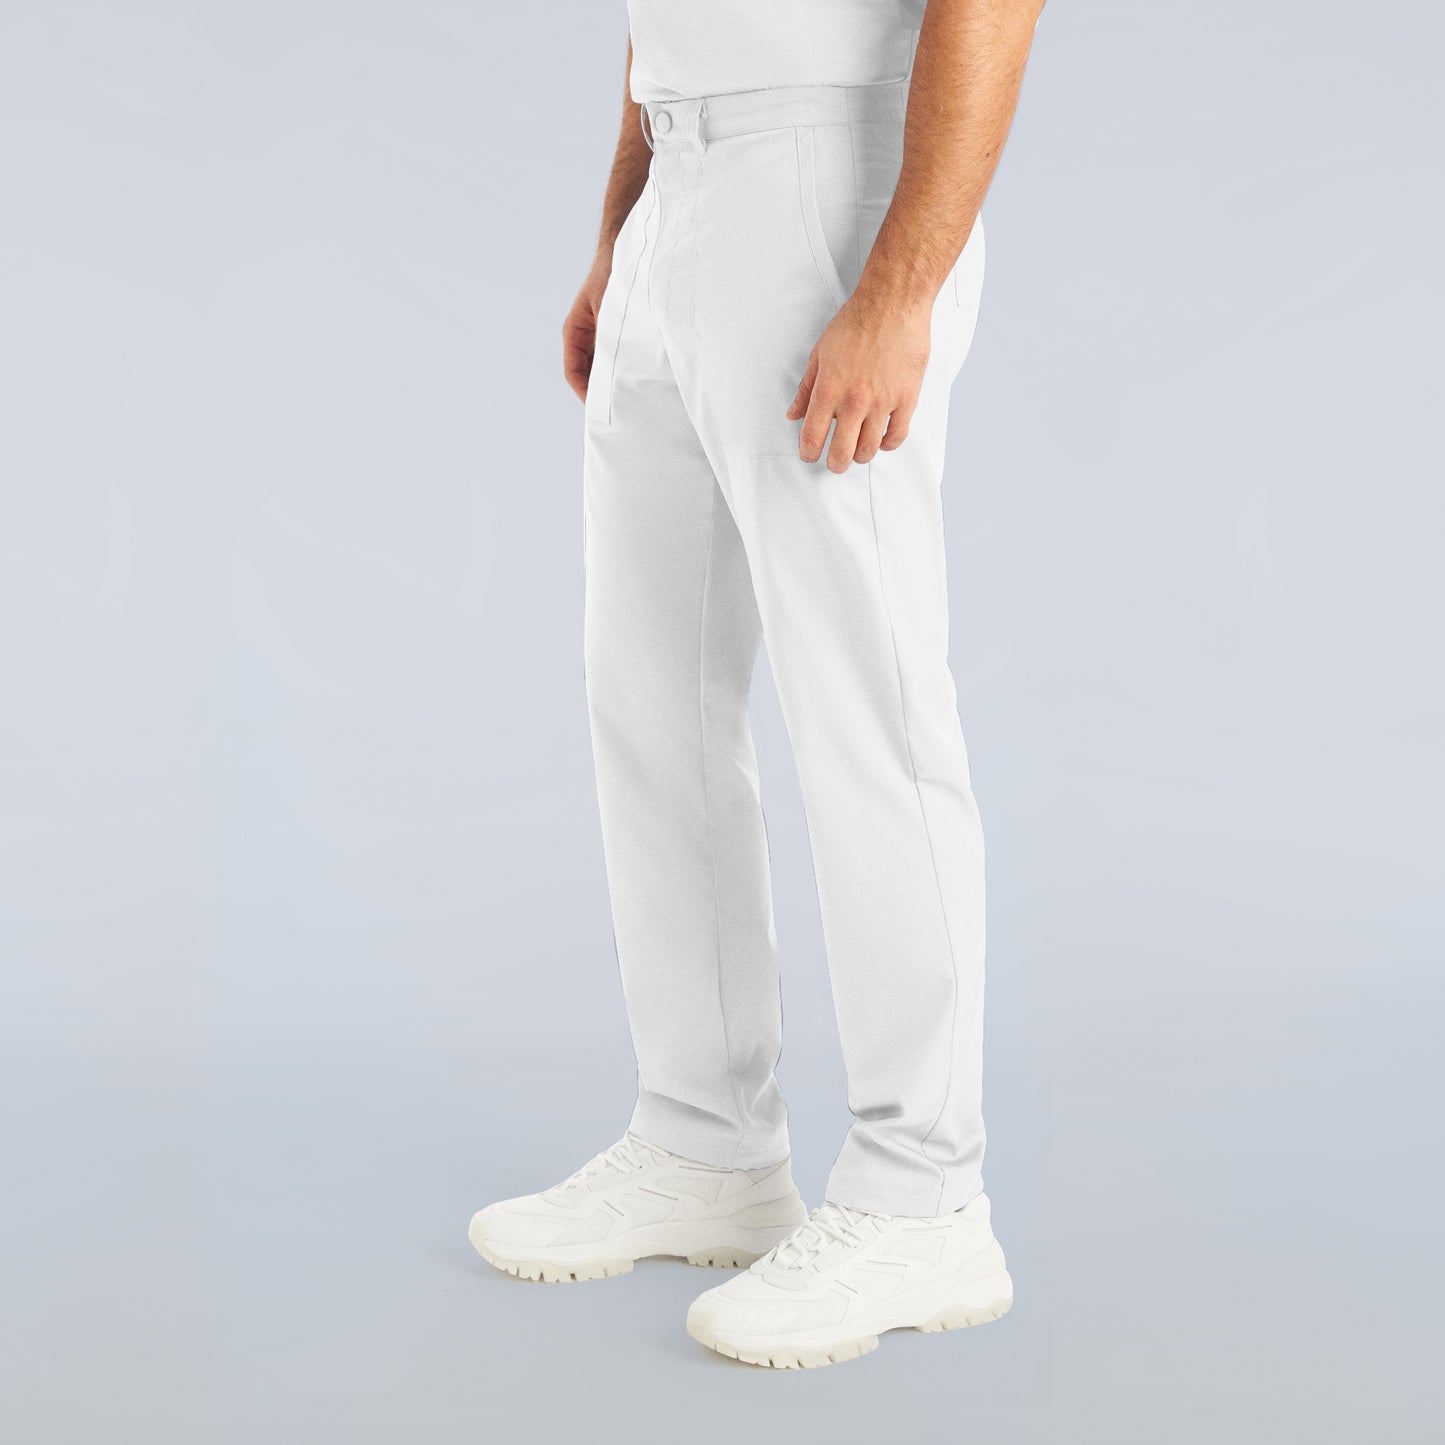 Pantalon droit homme - PROFLEX - L408